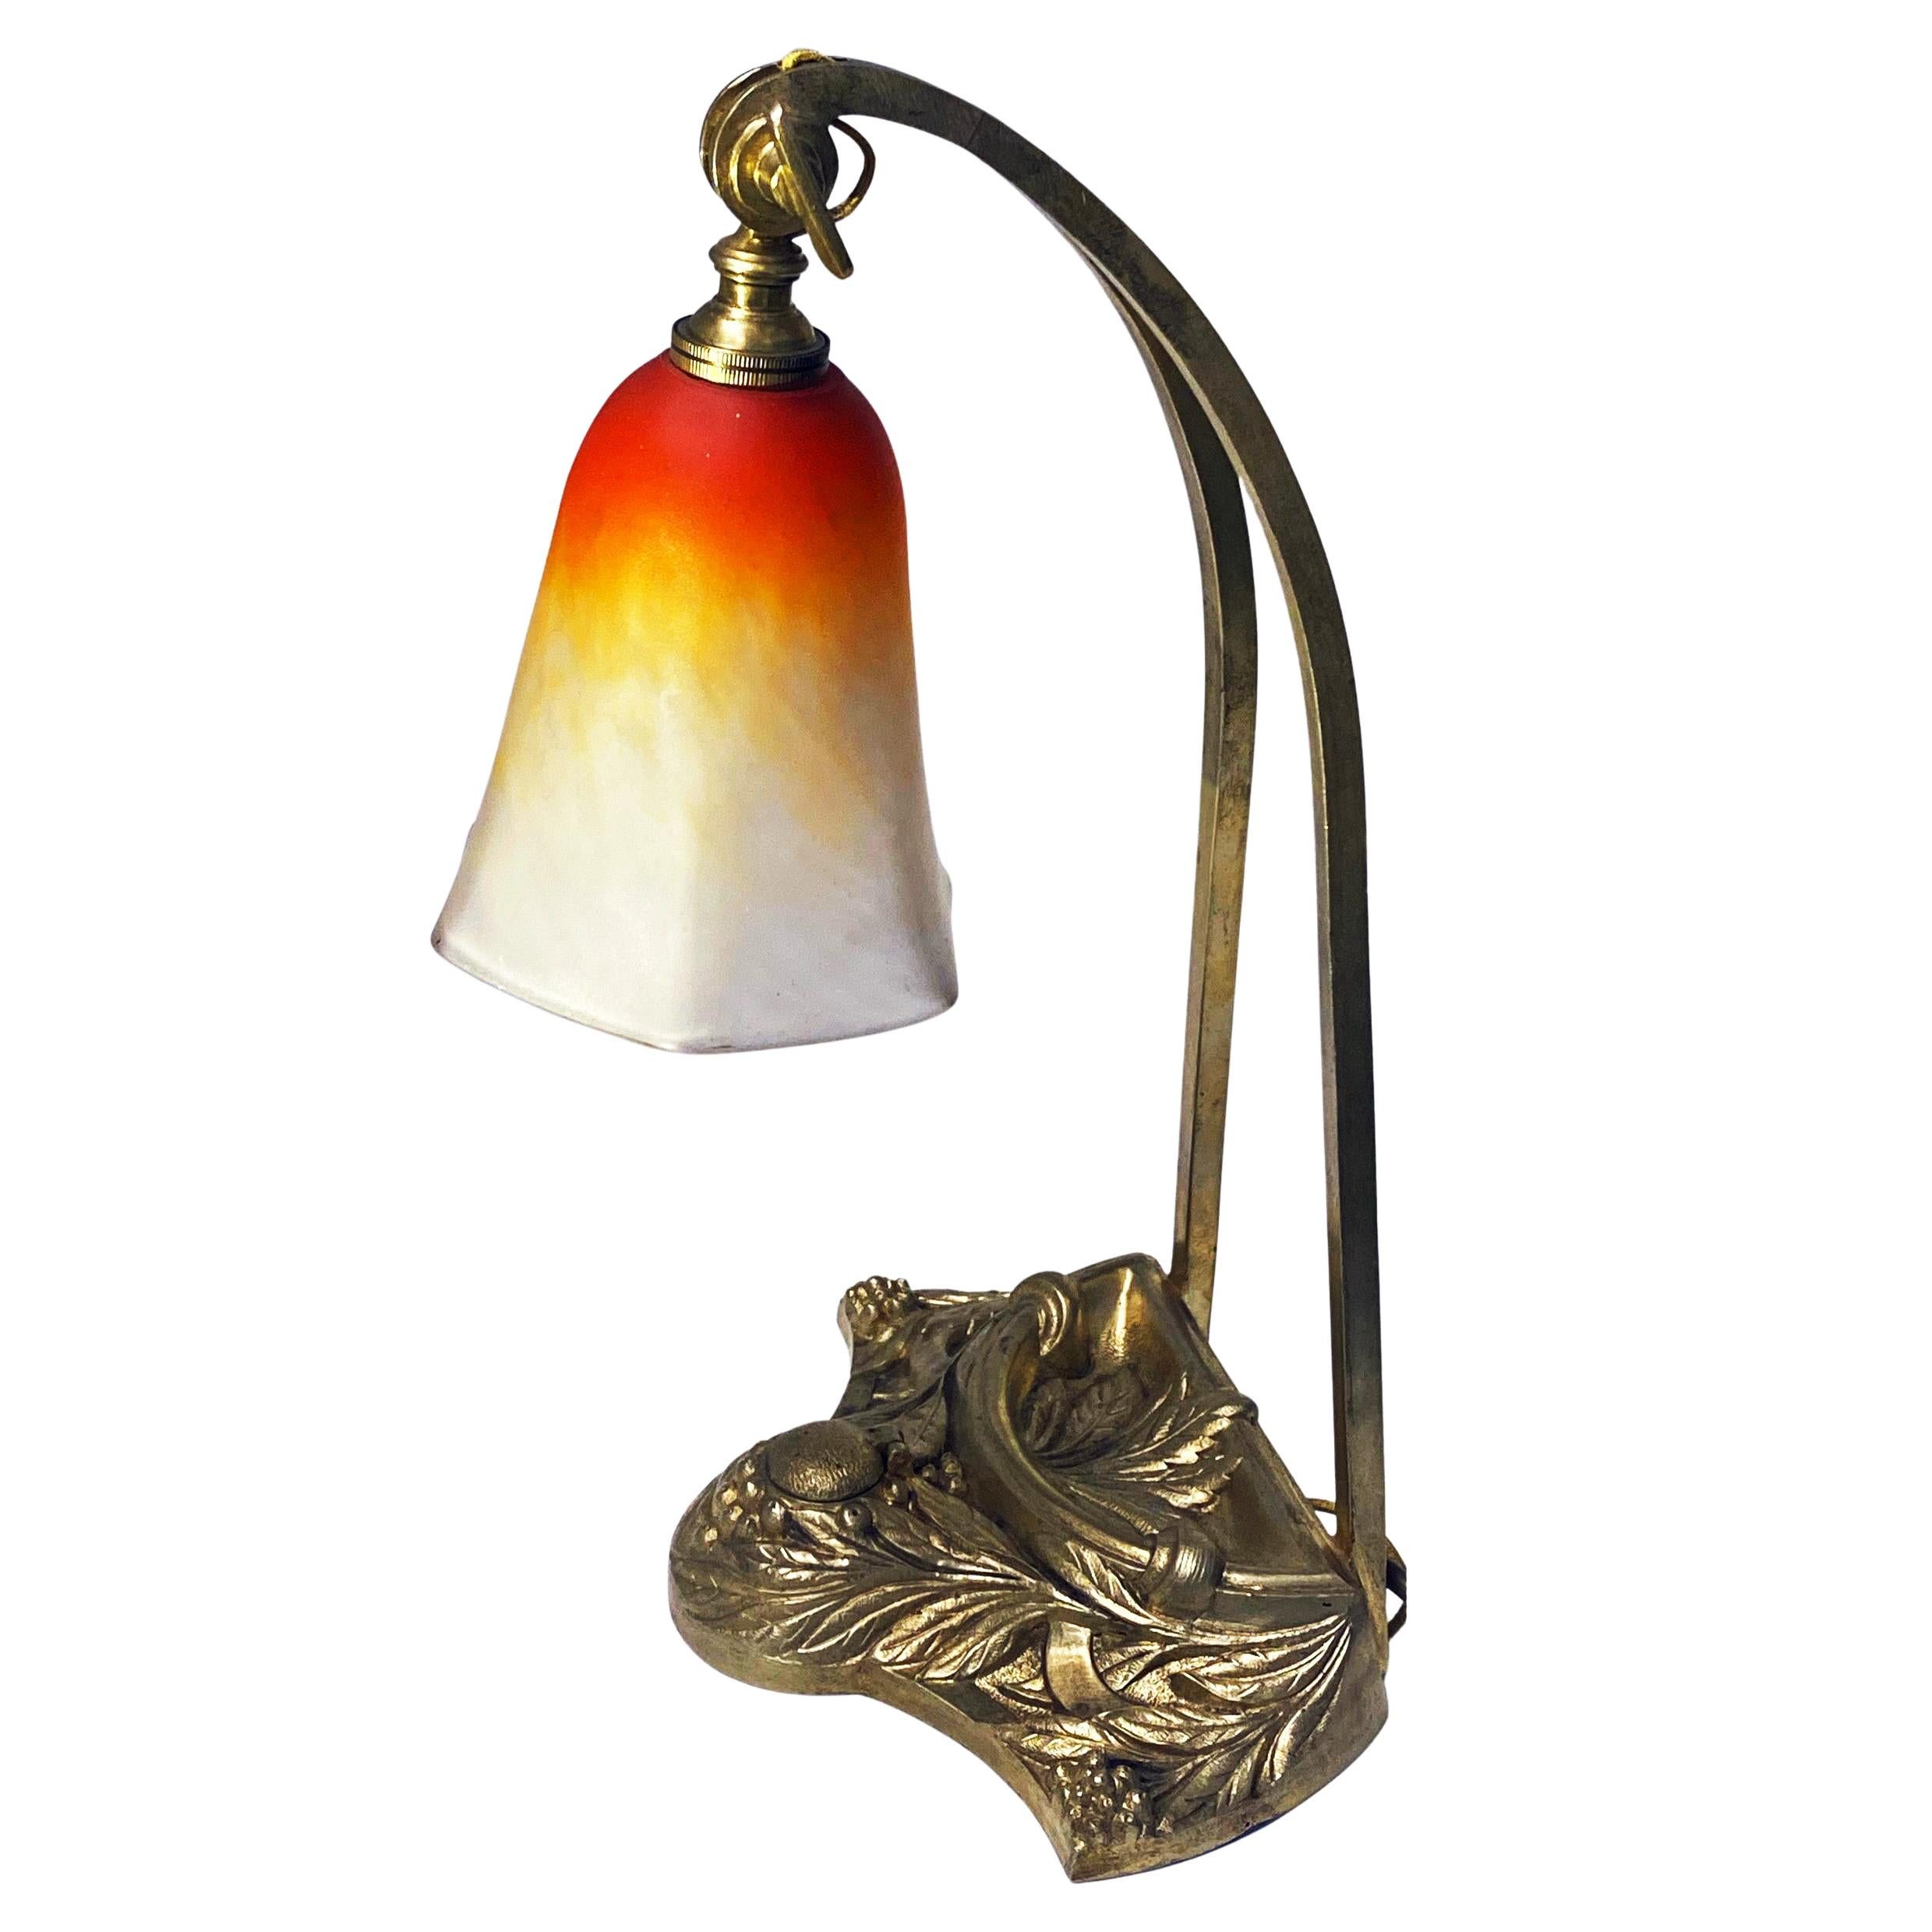 Französische Jugendstil-Tischlampe von Charles Schneider (Epinay-sur-Seine, Paris), Frankreich, um 1920, auf stilisiertem Bronzefuß. Der Sockel hat auch eine verdeckte Öffnung für ein Tintenfass. Der Glasschirm wurde aus geblasenem Doppelglas